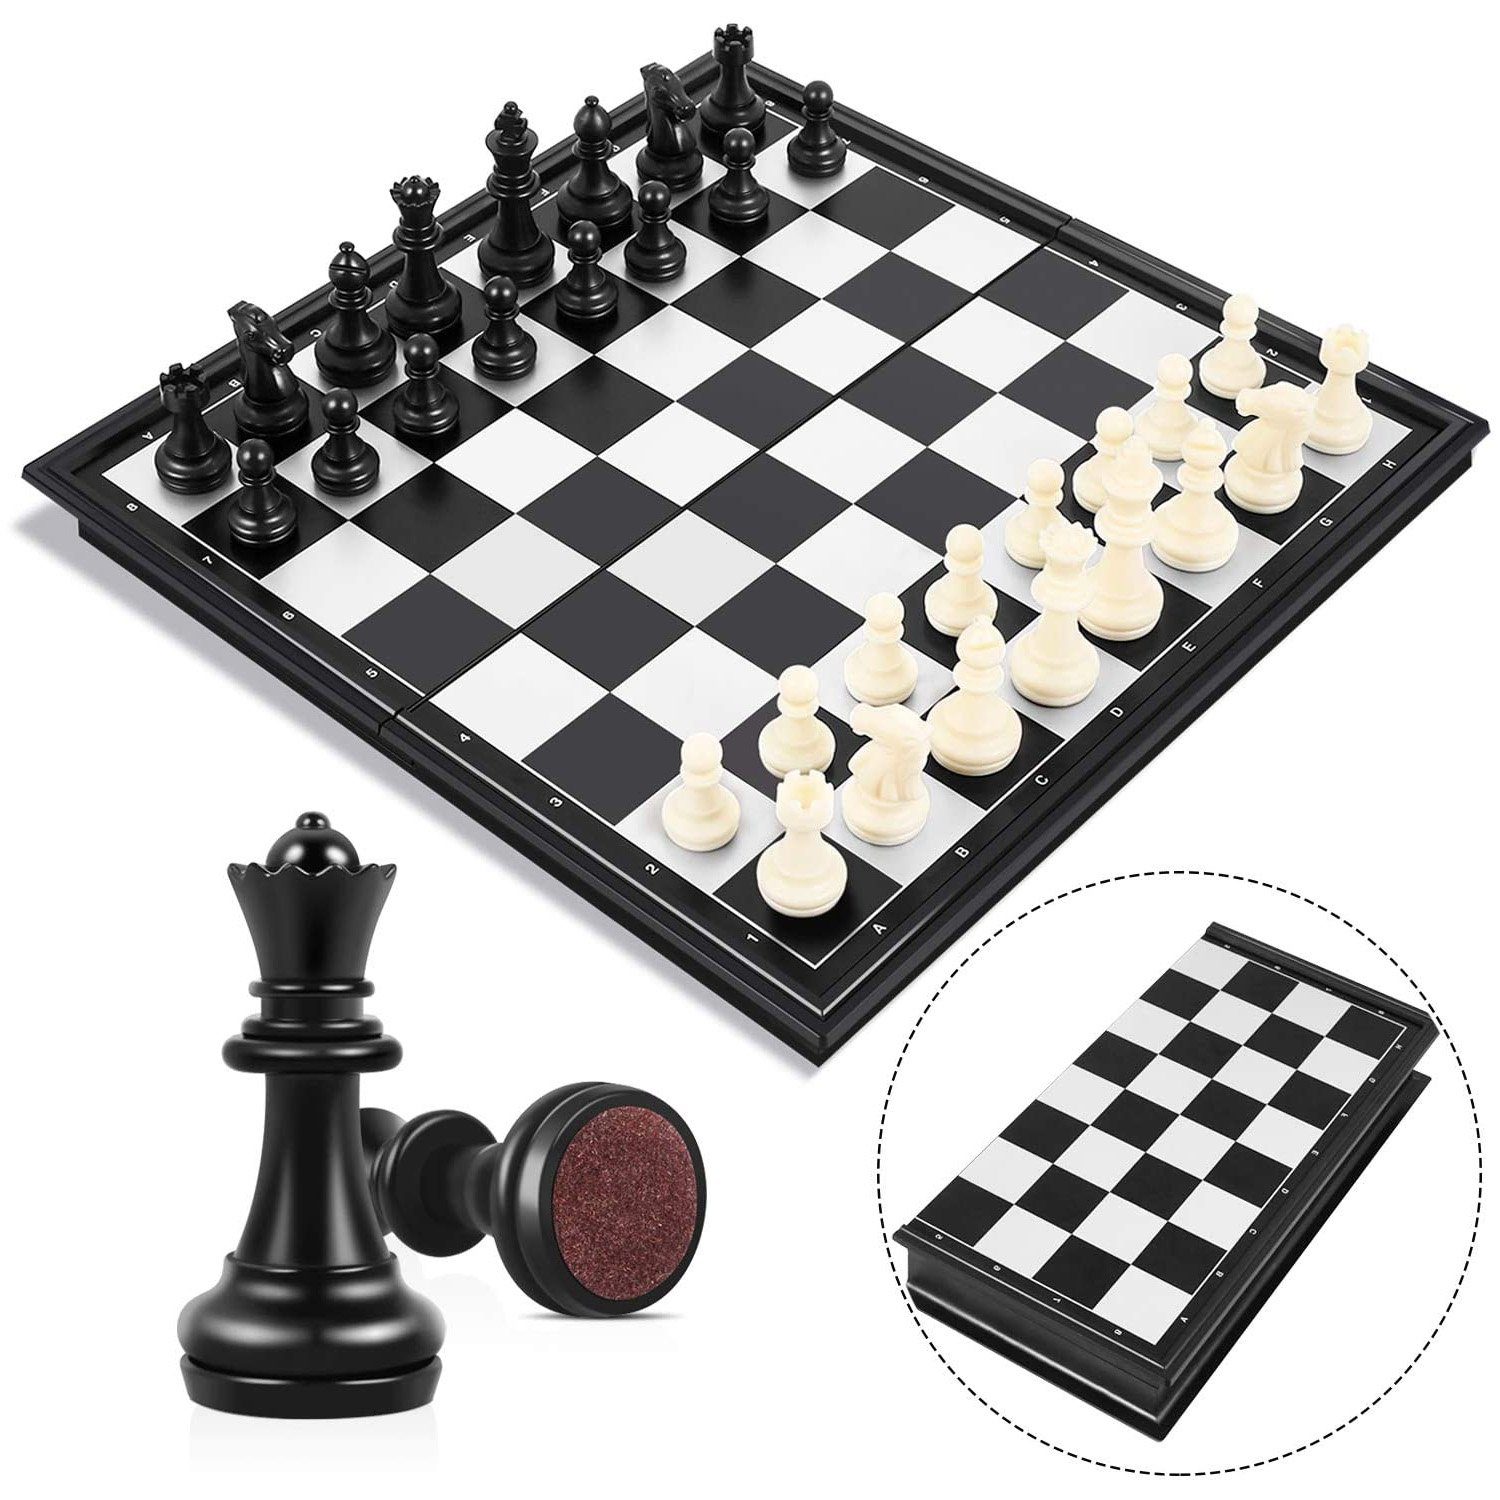 2 in 1 Schachspiel Magnetisch Fixget Schachspiel Schachbrett mit Deluxe Magne... 